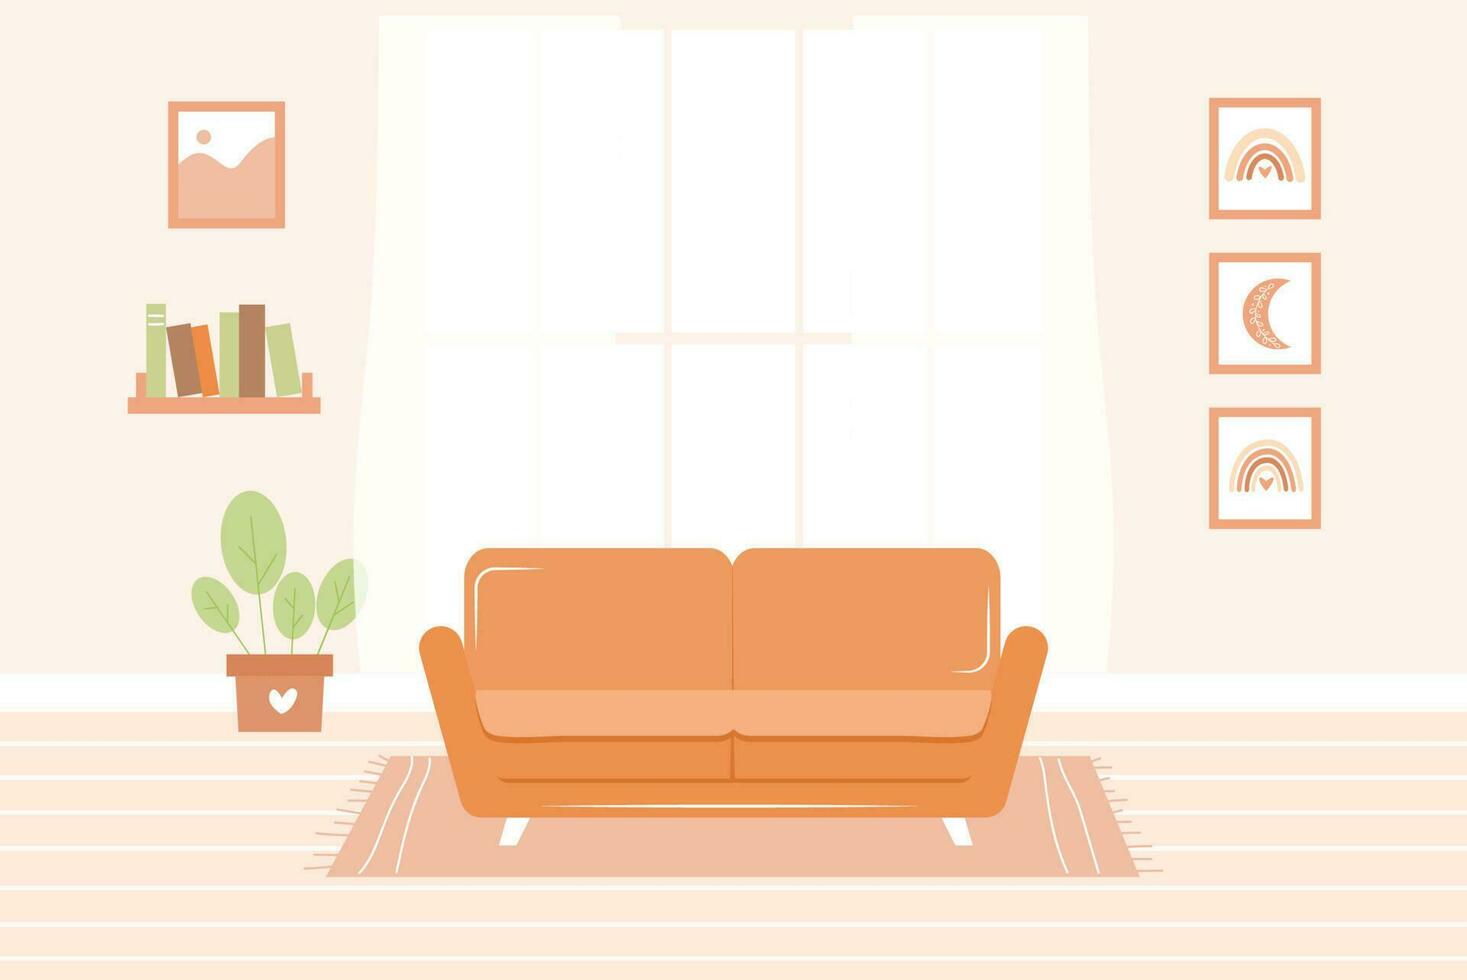 söt levande rum interiör - soffa på matta, Hem växt, målningar, bokhylla och fönster med gardiner. vektor illustration i platt tecknad serie stil